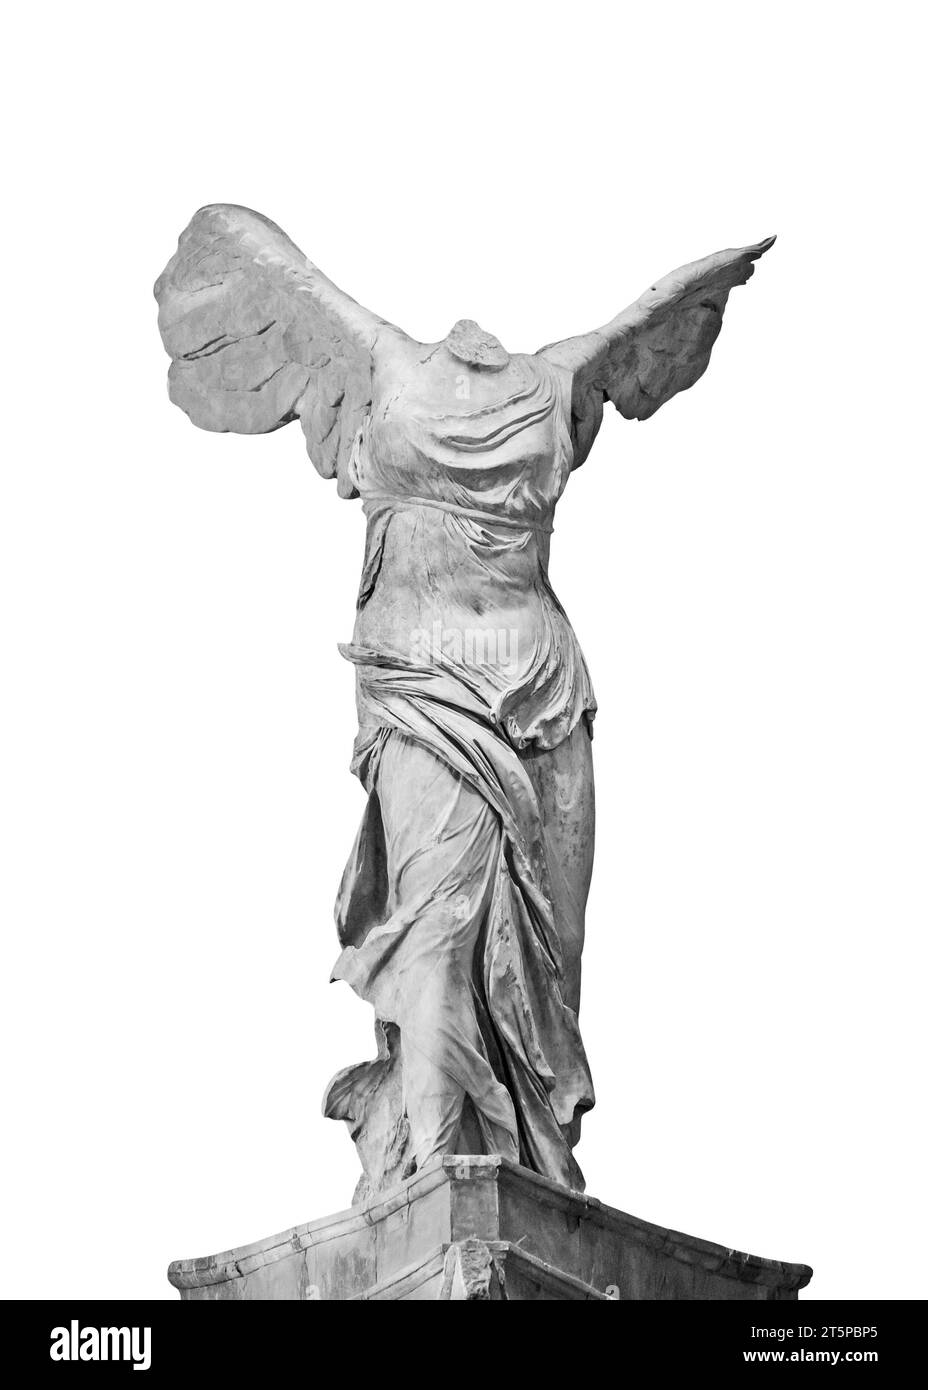 Isolata la Vittoria alata di Samotracia, una famosa statua greca dell'epoca ellenistica che rappresenta la dea Nike, in bianco e nero Foto Stock